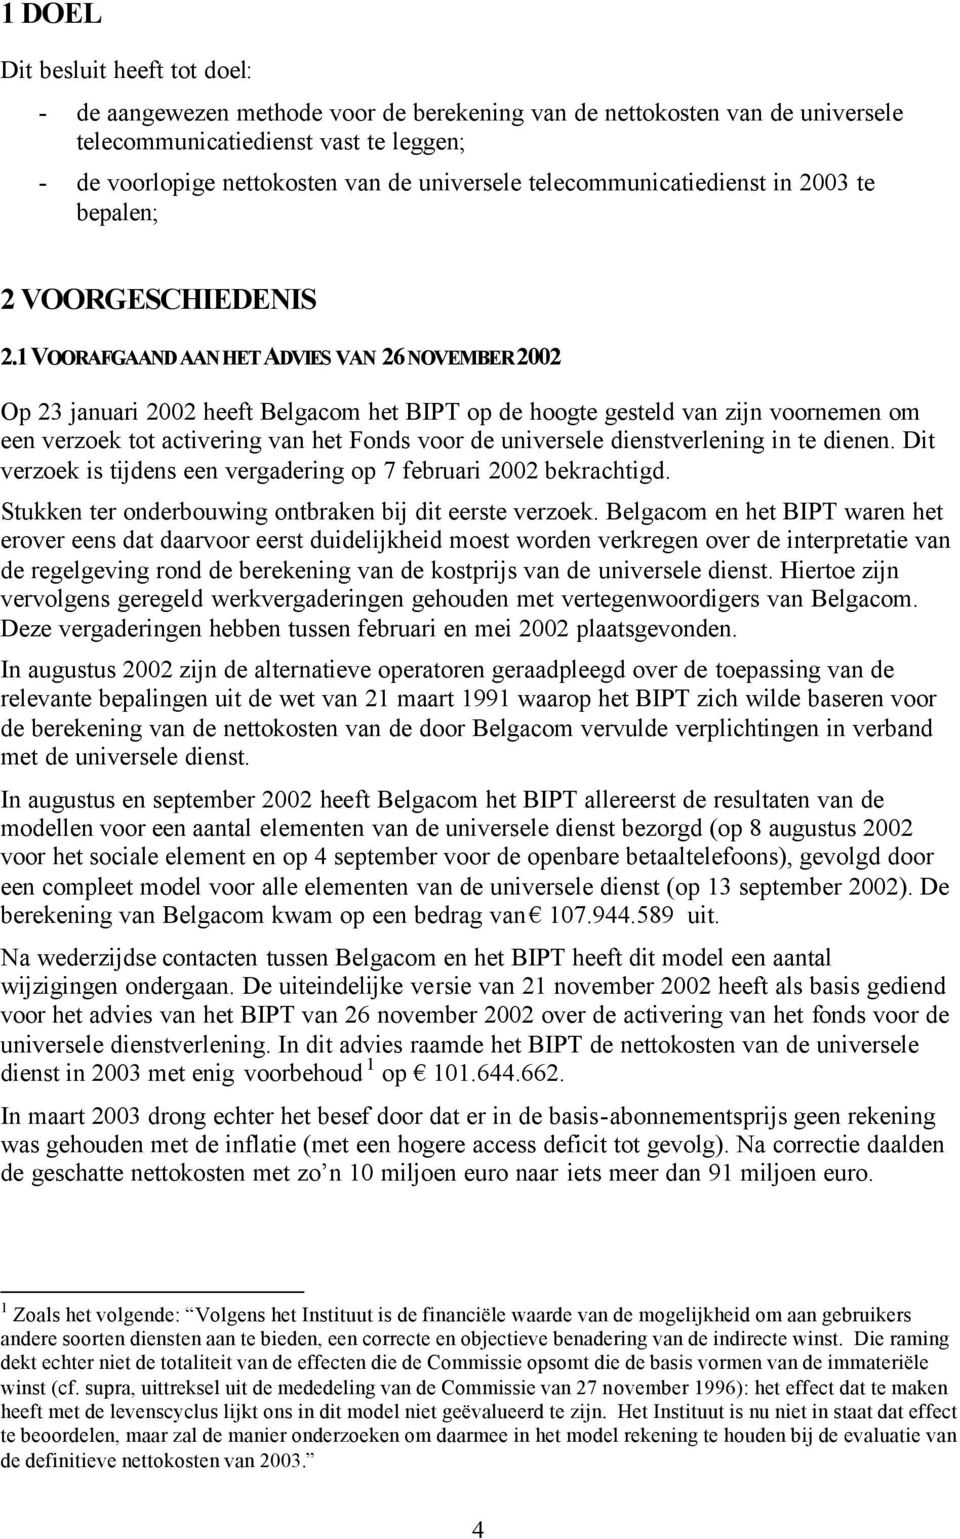 1 VOORAFGAAND AAN HET ADVIES VAN 26 NOVEMBER 2002 Op 23 januari 2002 heeft Belgacom het BIPT op de hoogte gesteld van zijn voornemen om een verzoek tot activering van het Fonds voor de universele